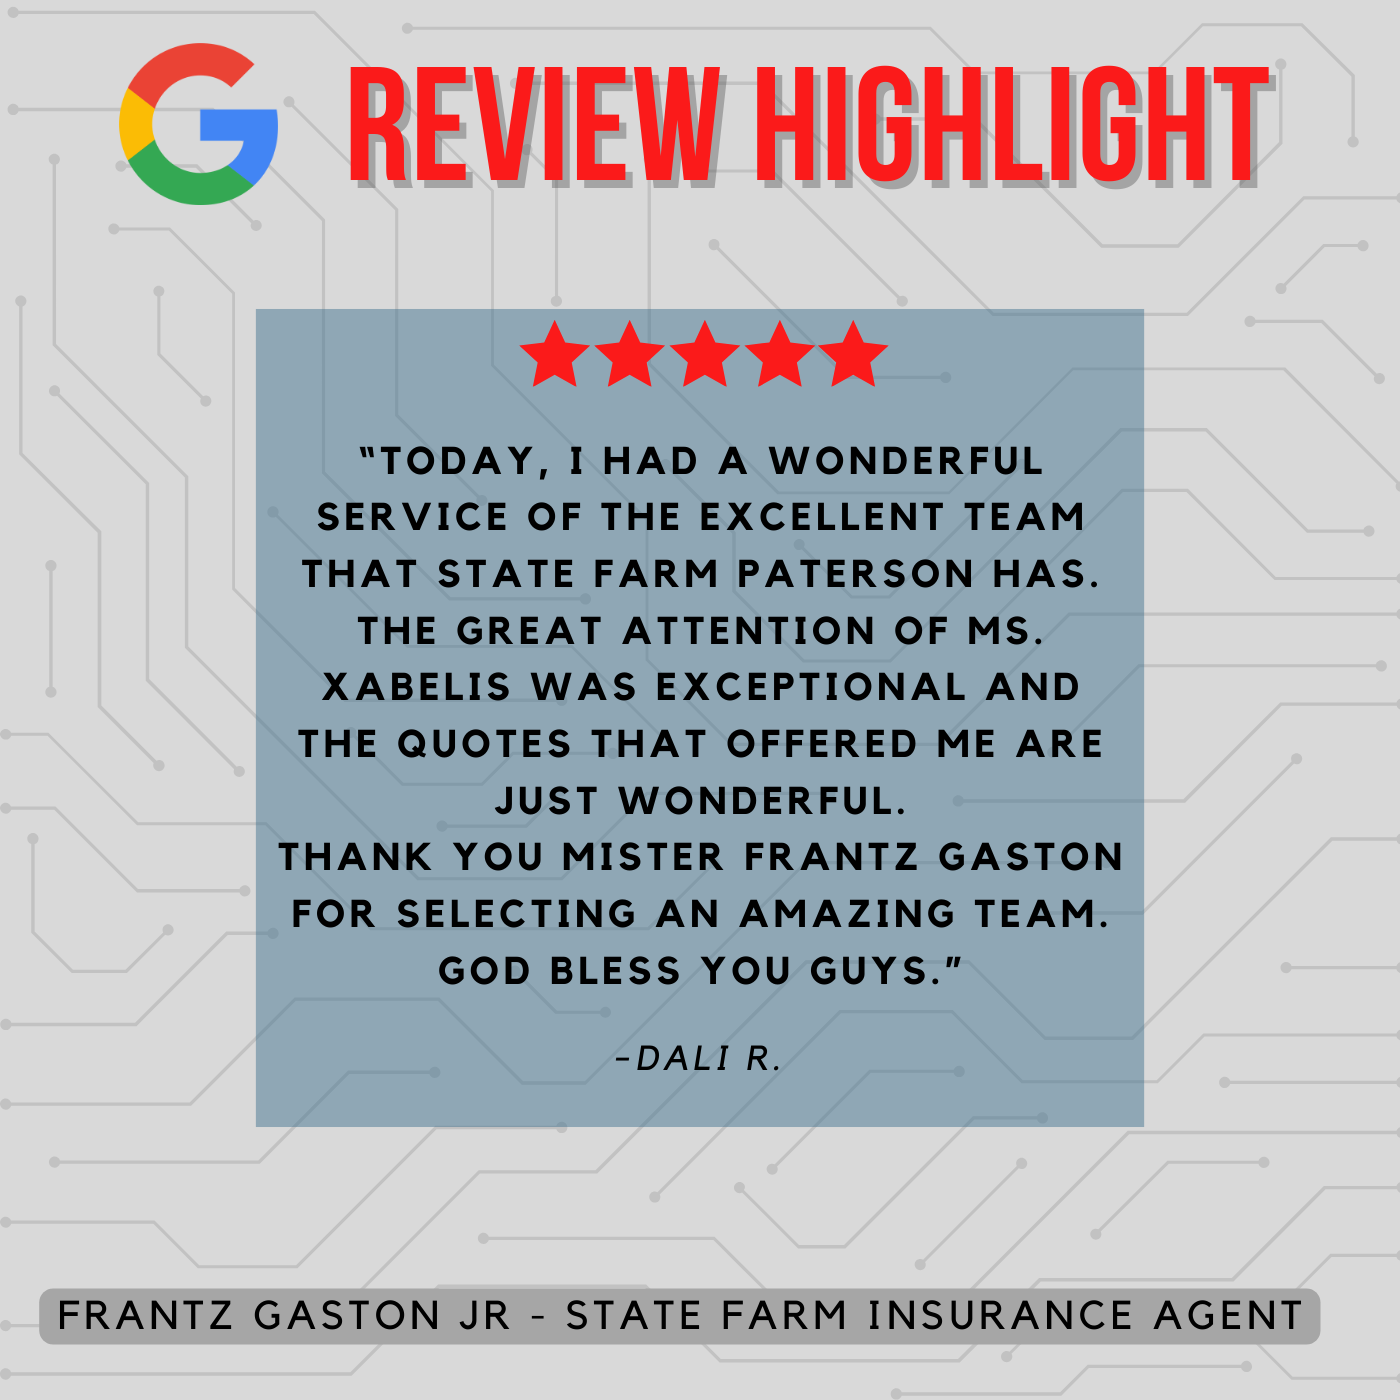 Frantz Gaston Jr - State Farm Insurance Agent
Review highlight